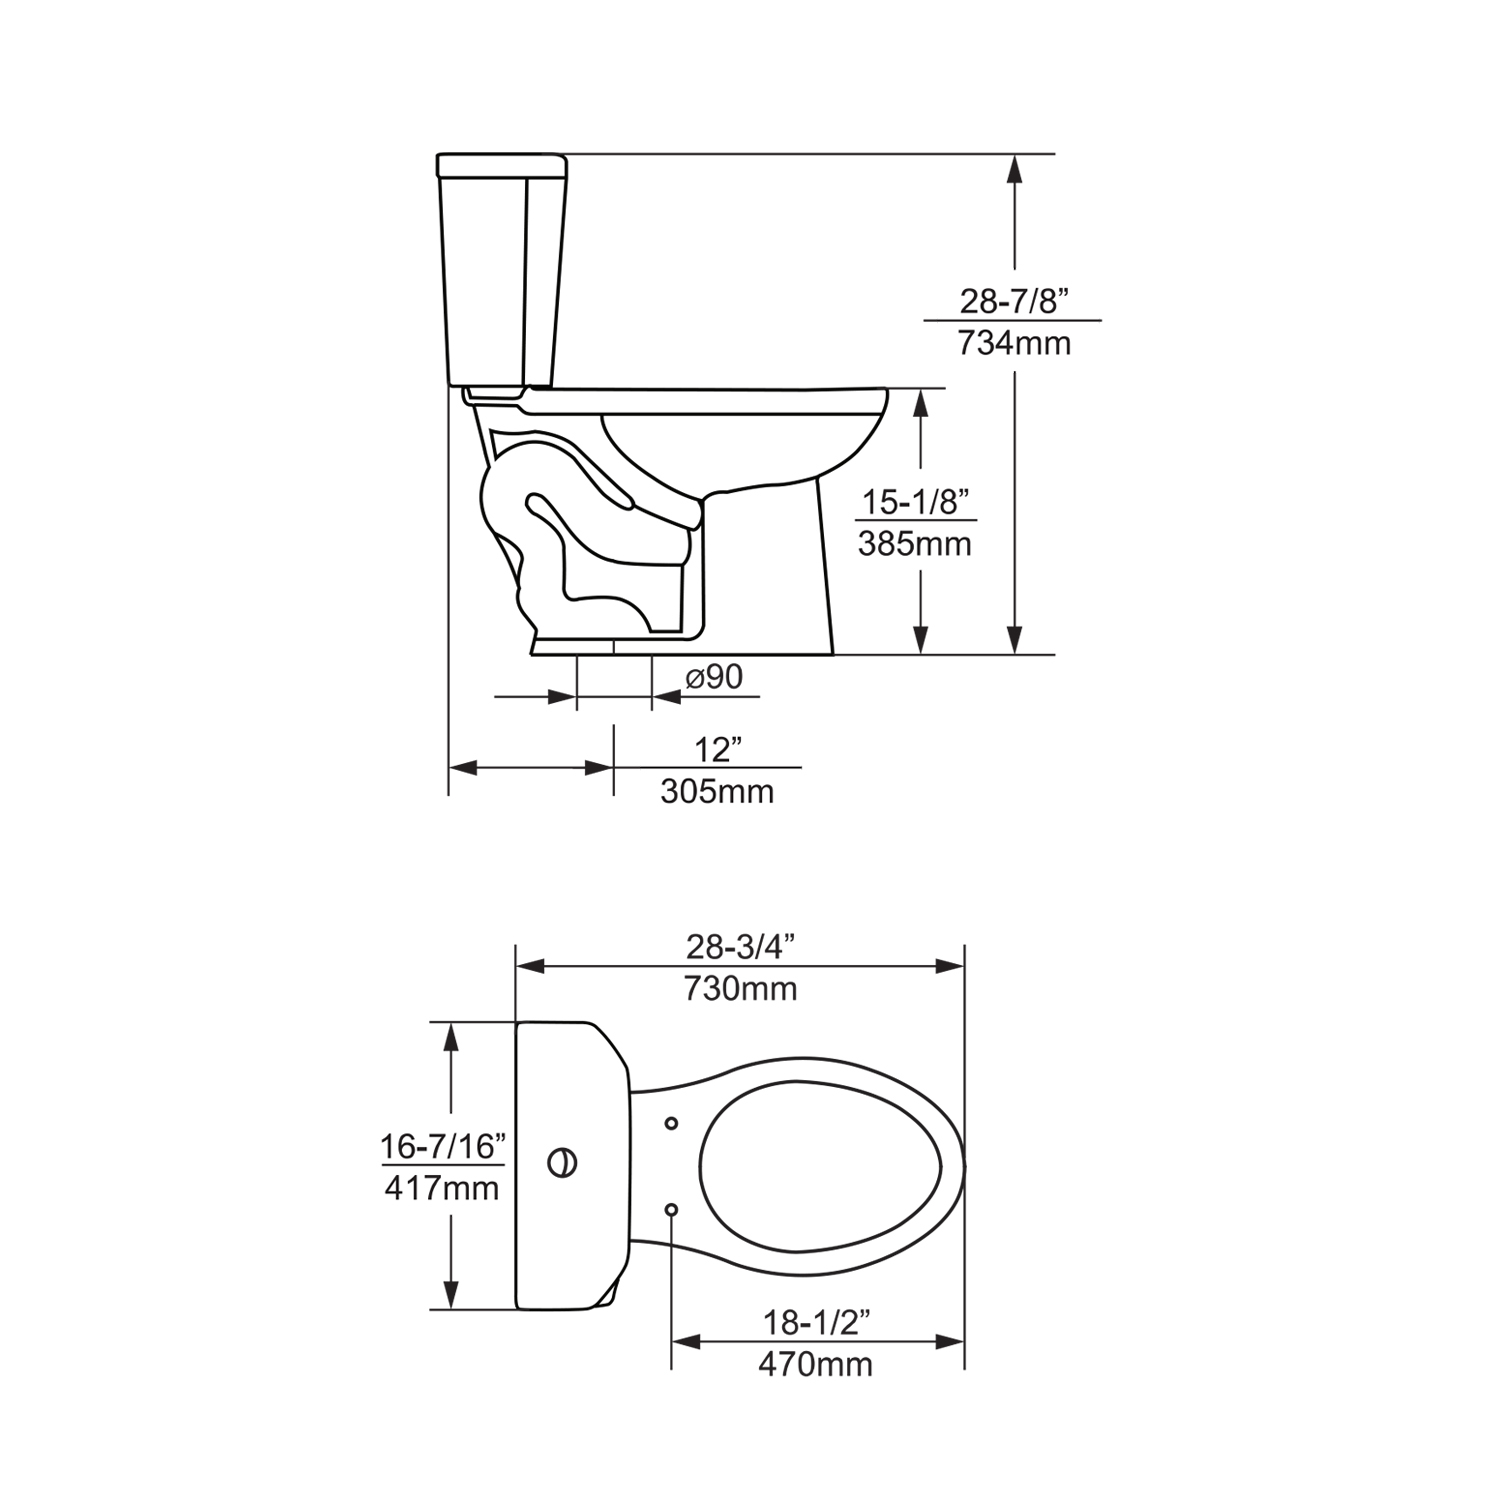 Duko A249L+T49D Two-Piece DualFlush Elongated Toilet